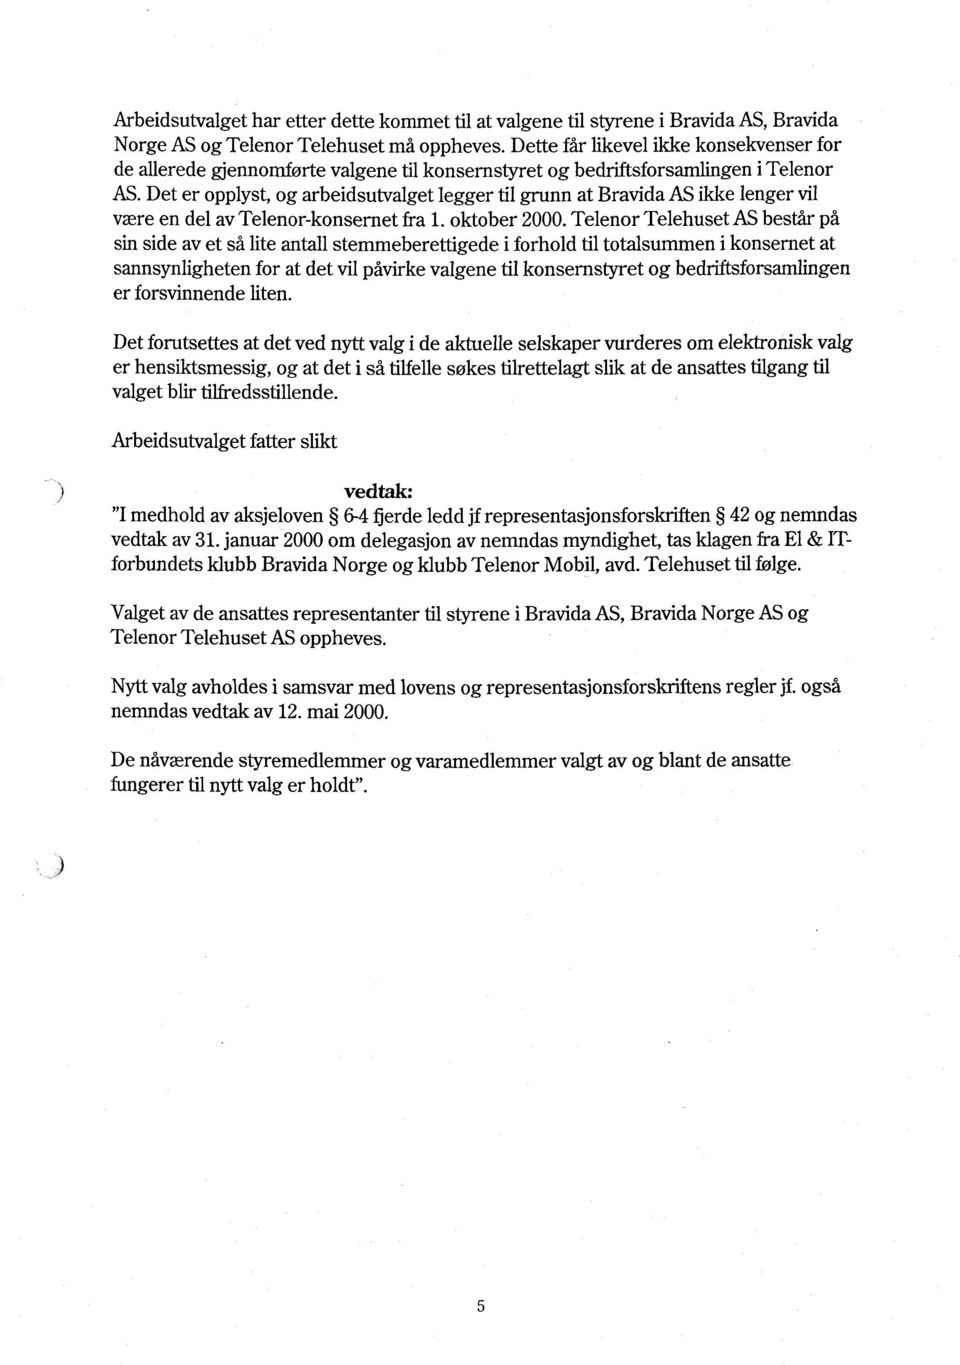 Det er opplyst, og arbeidsutvalget legger til grunn at Bravida AS ikke lenger vil være en del av Telenor-konsernet fra 1. oktober 2000.